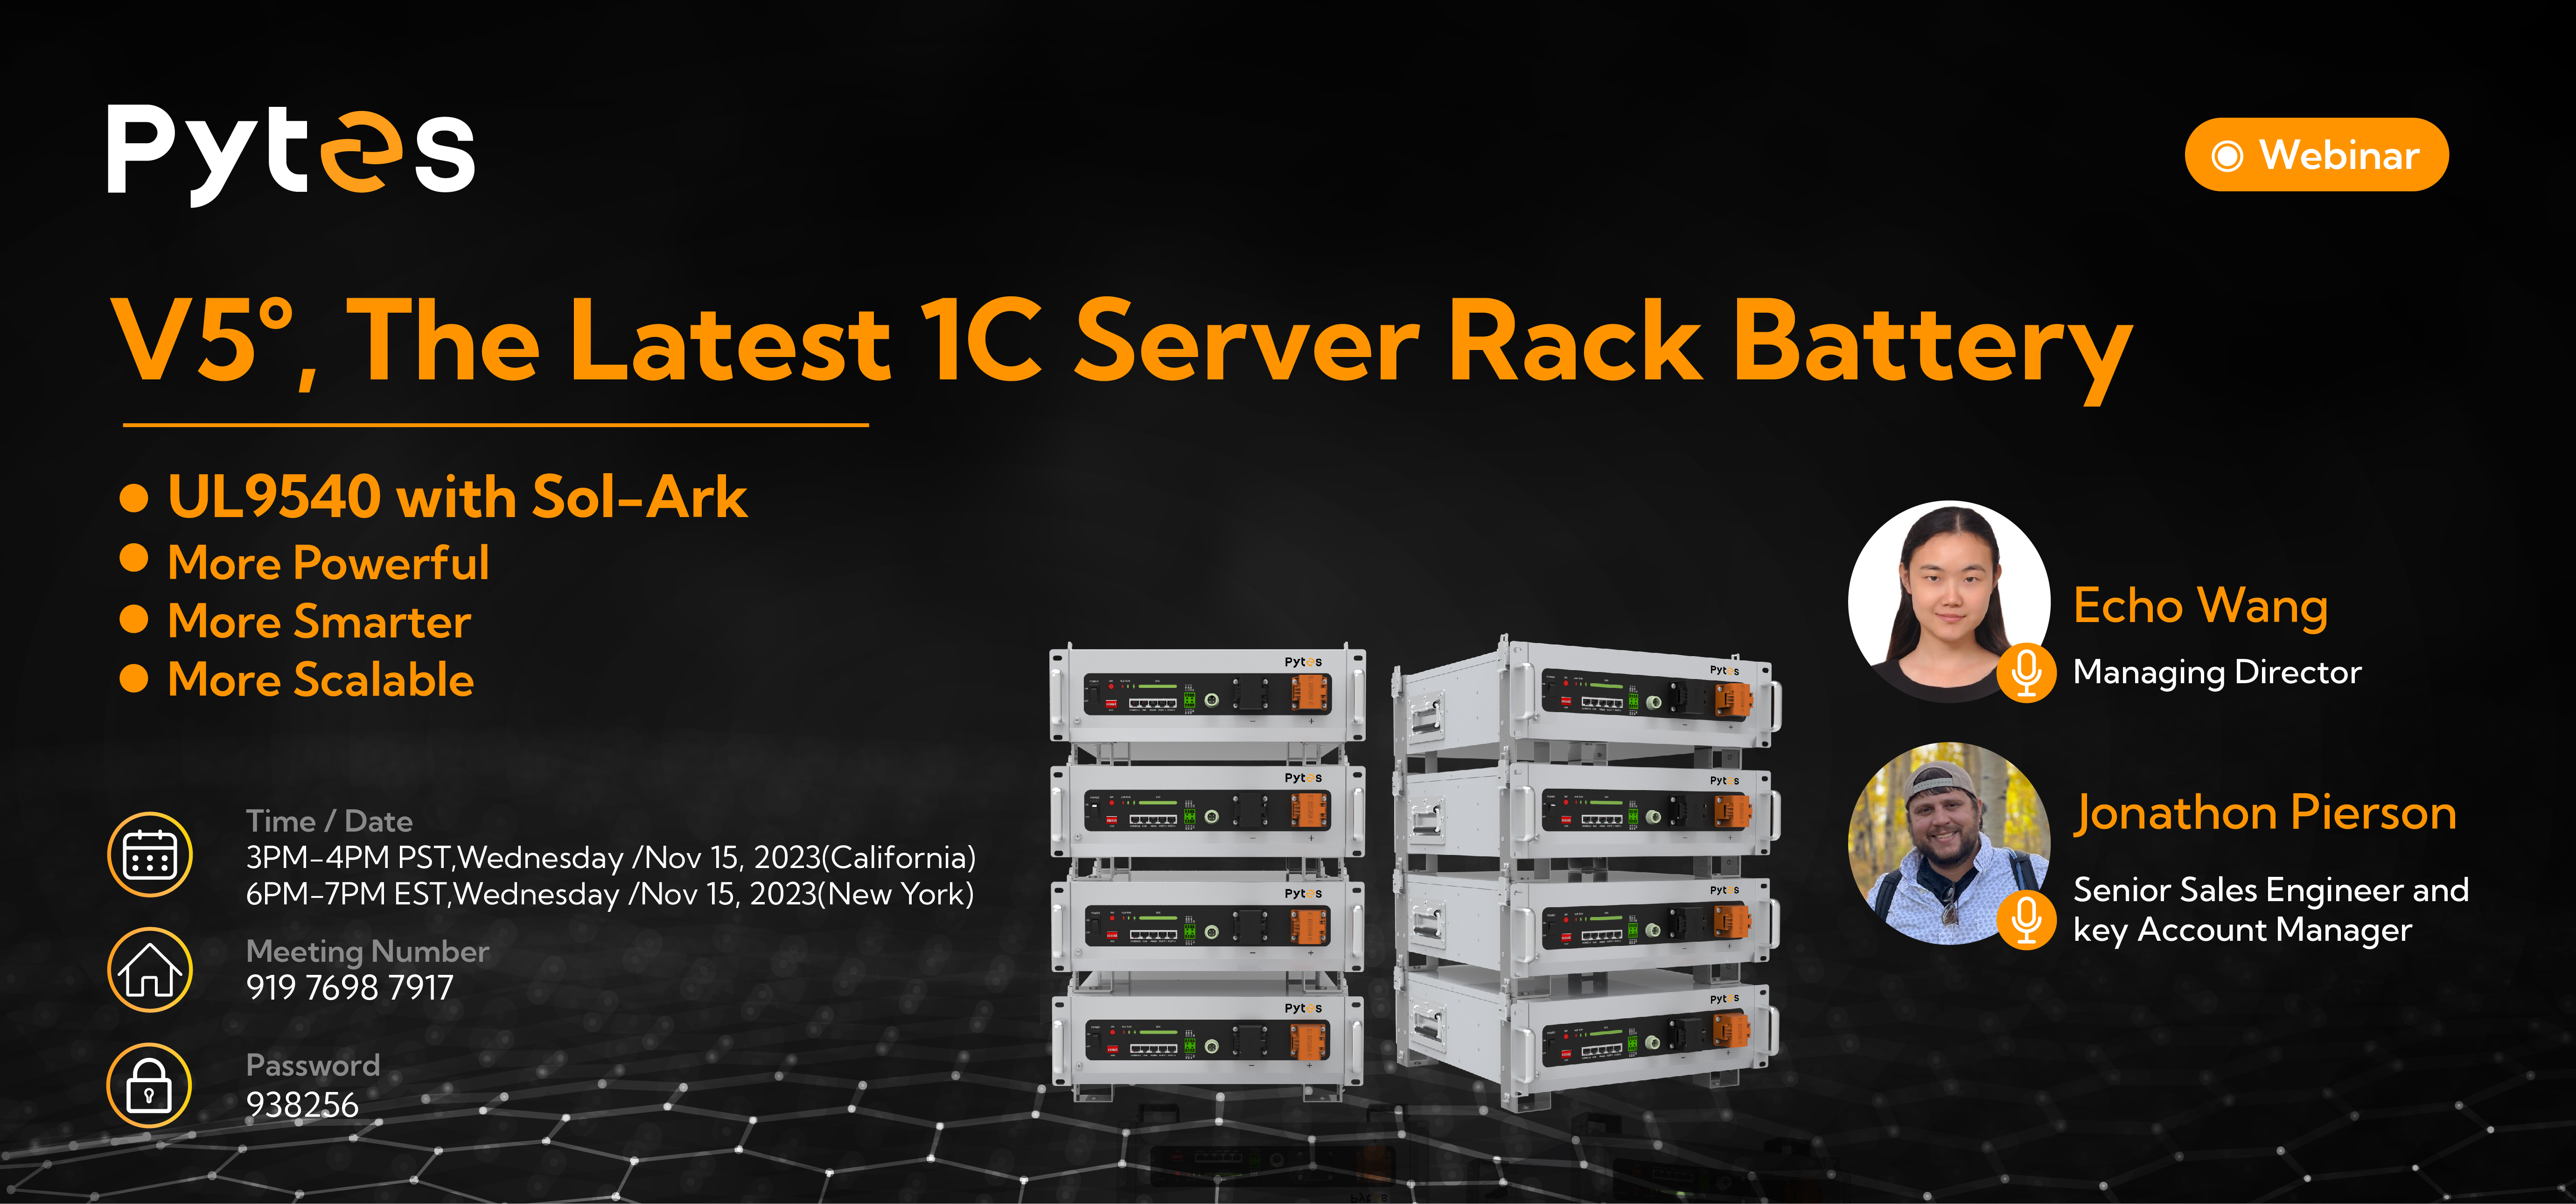 V5° - The Latest 1C Server Rack Battery